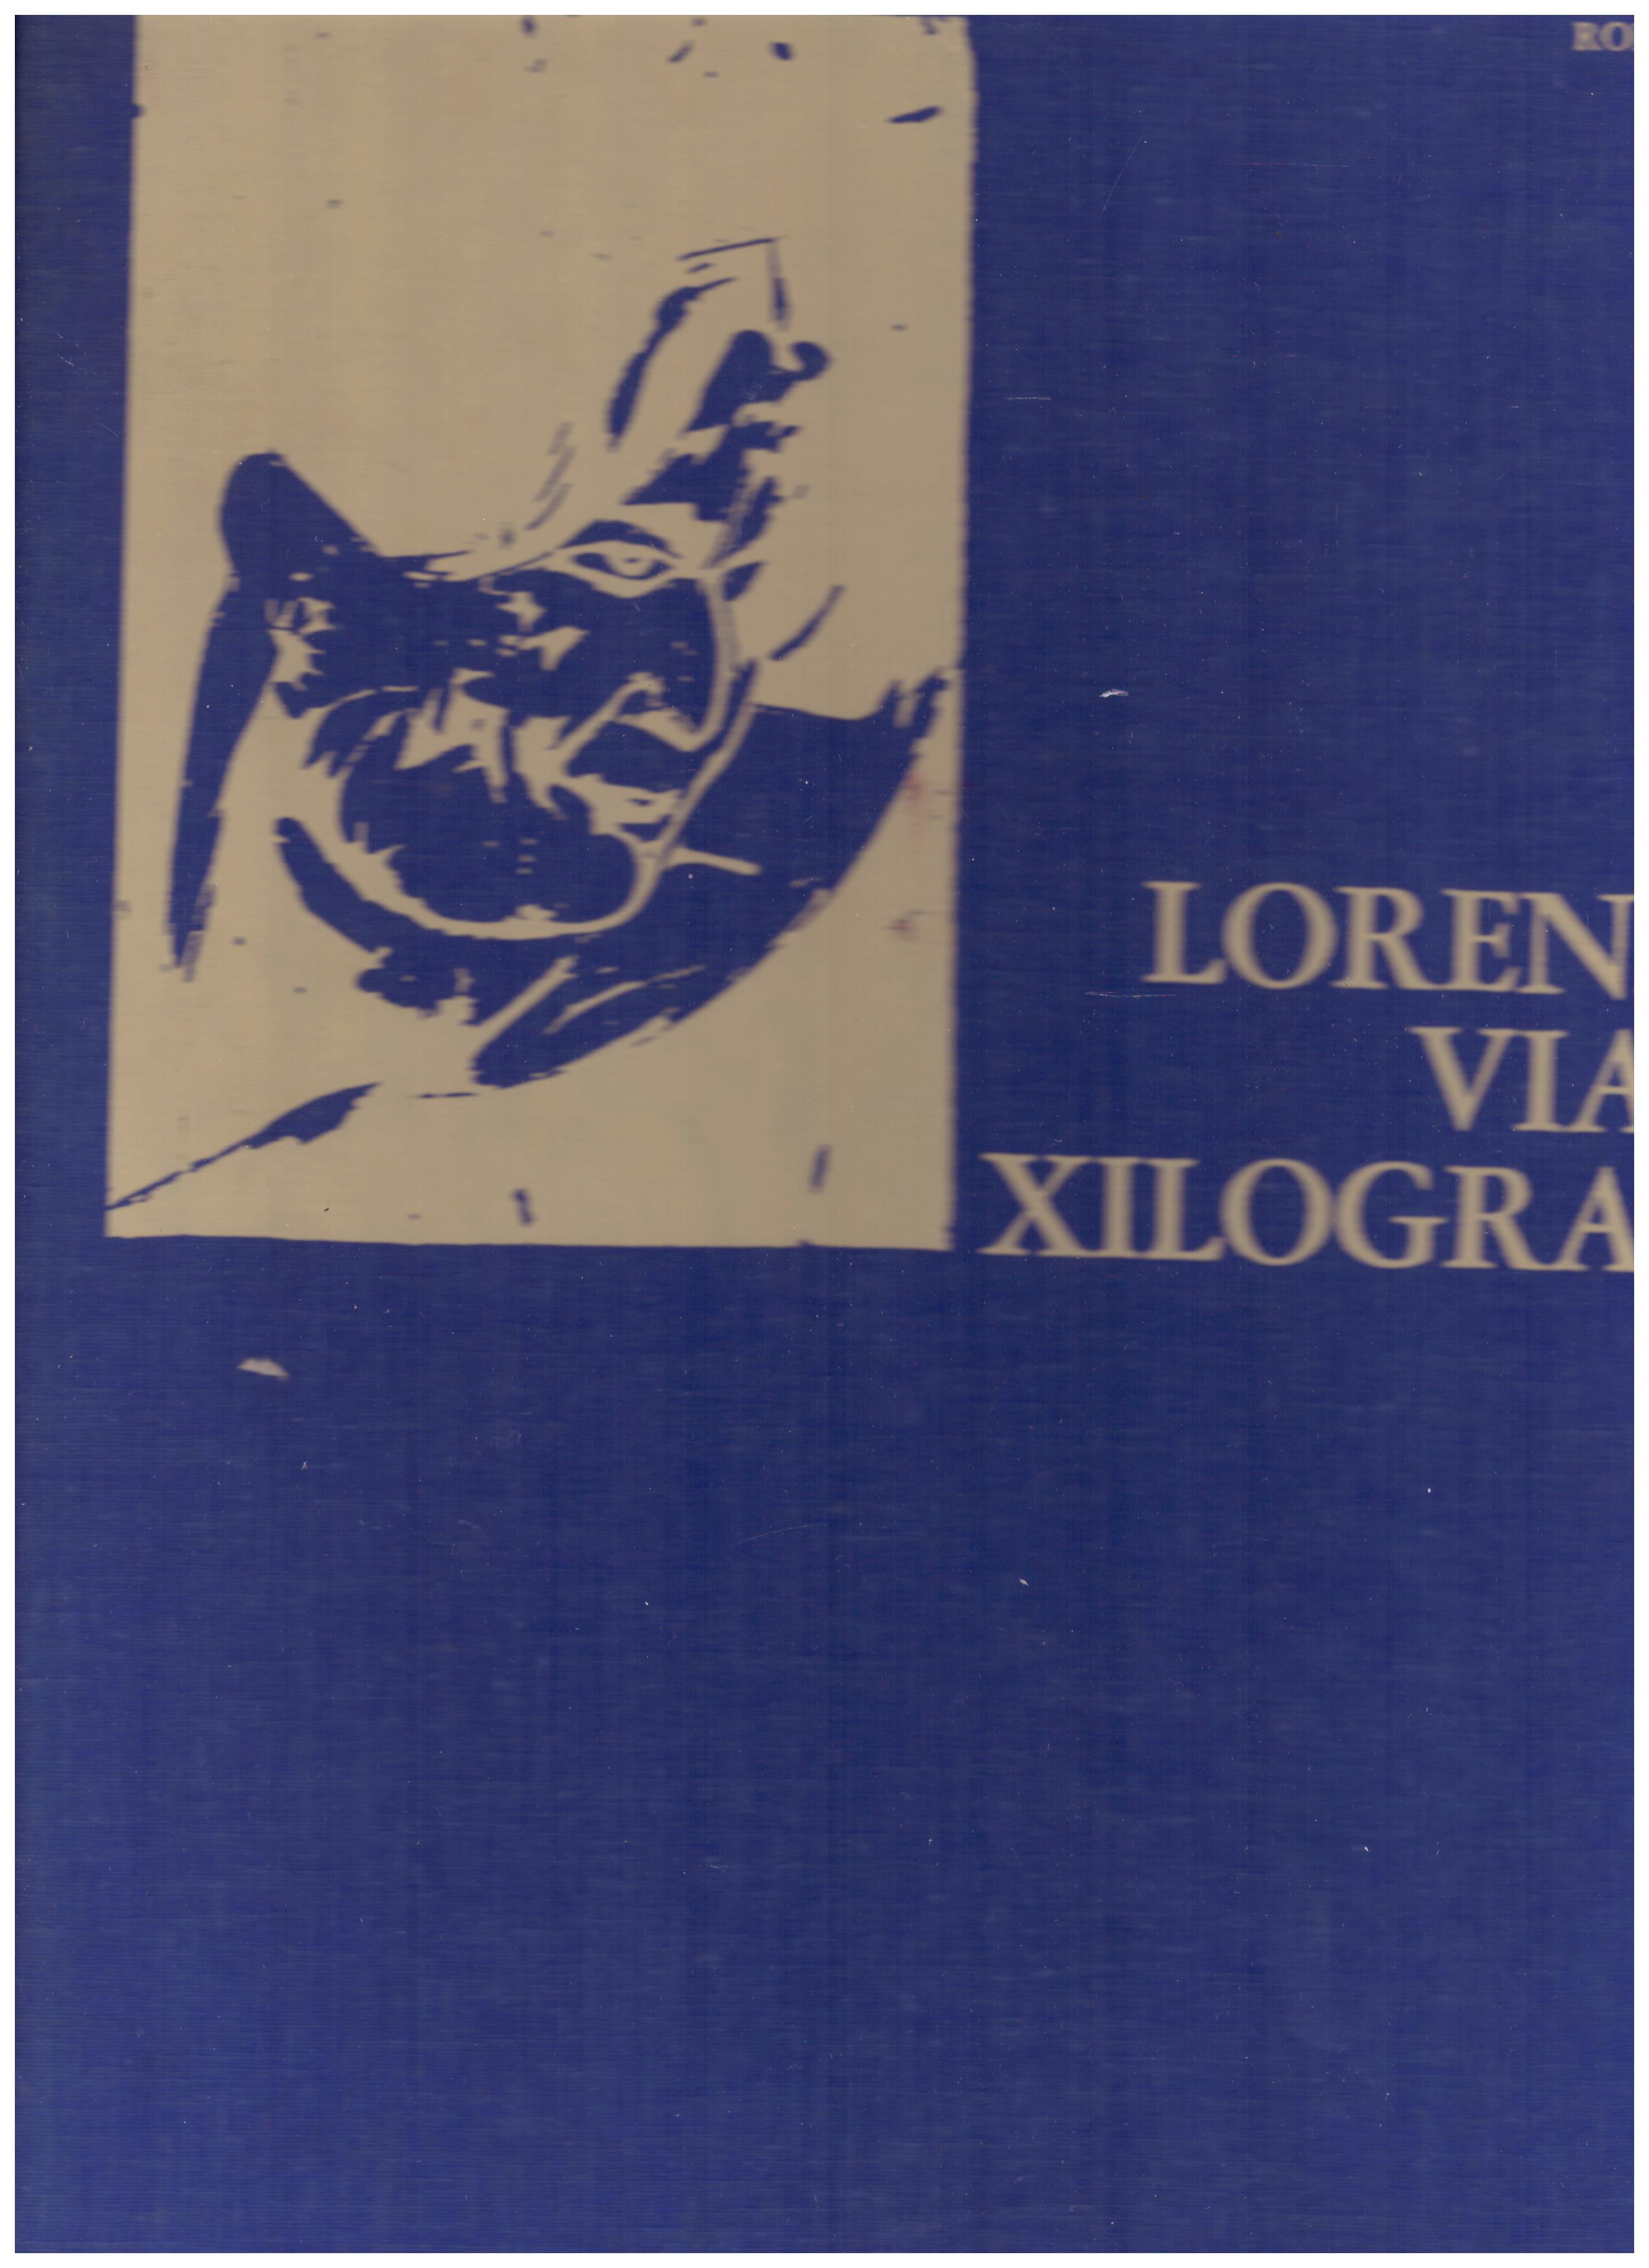 Titolo: Lorenzo Viani xilografo Autore: Rodolfo Fini Editore: monte dei Paschi di Siena